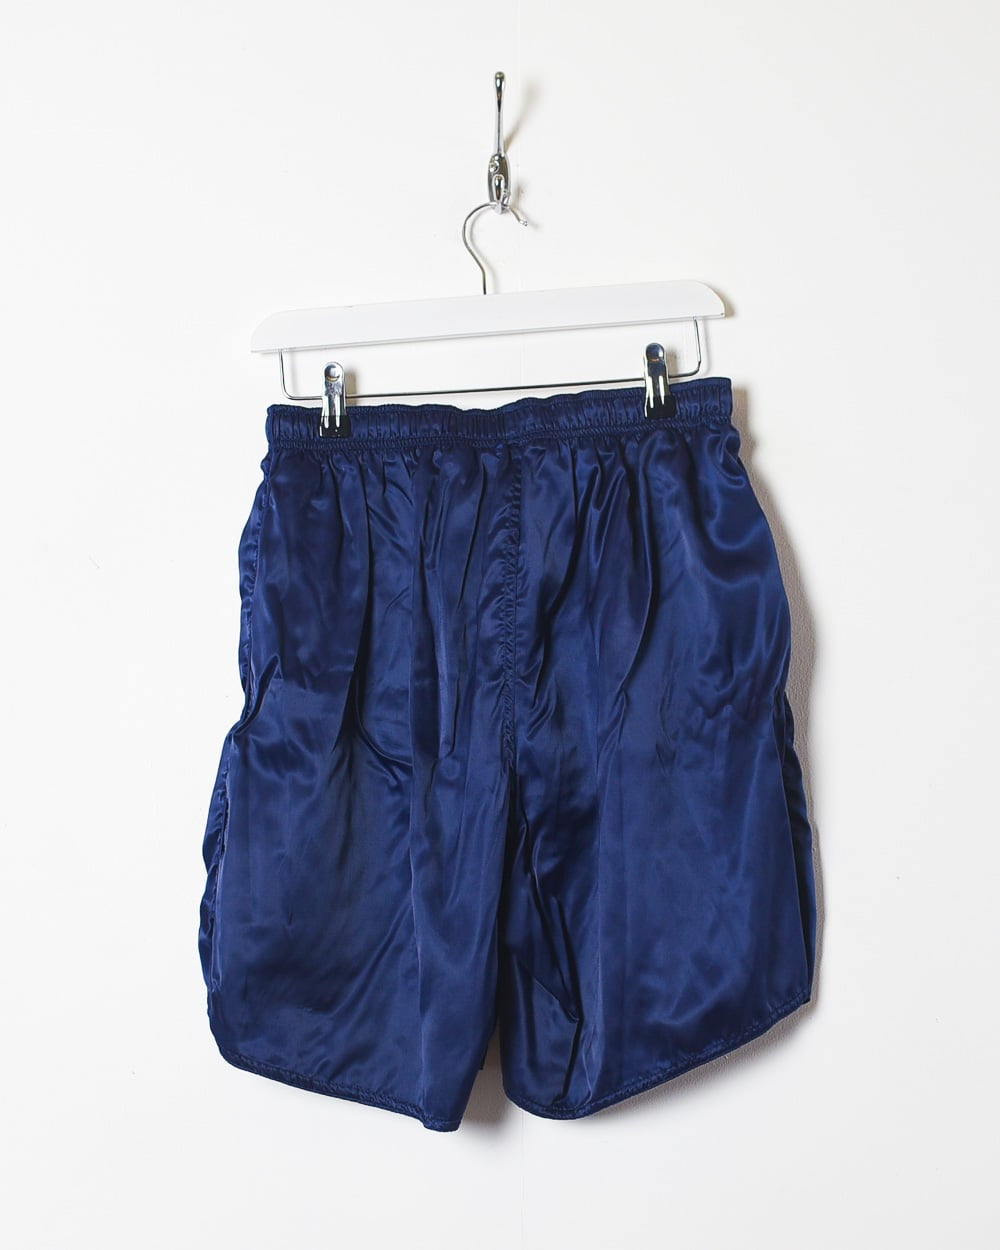 Navy Nike Shorts - Large